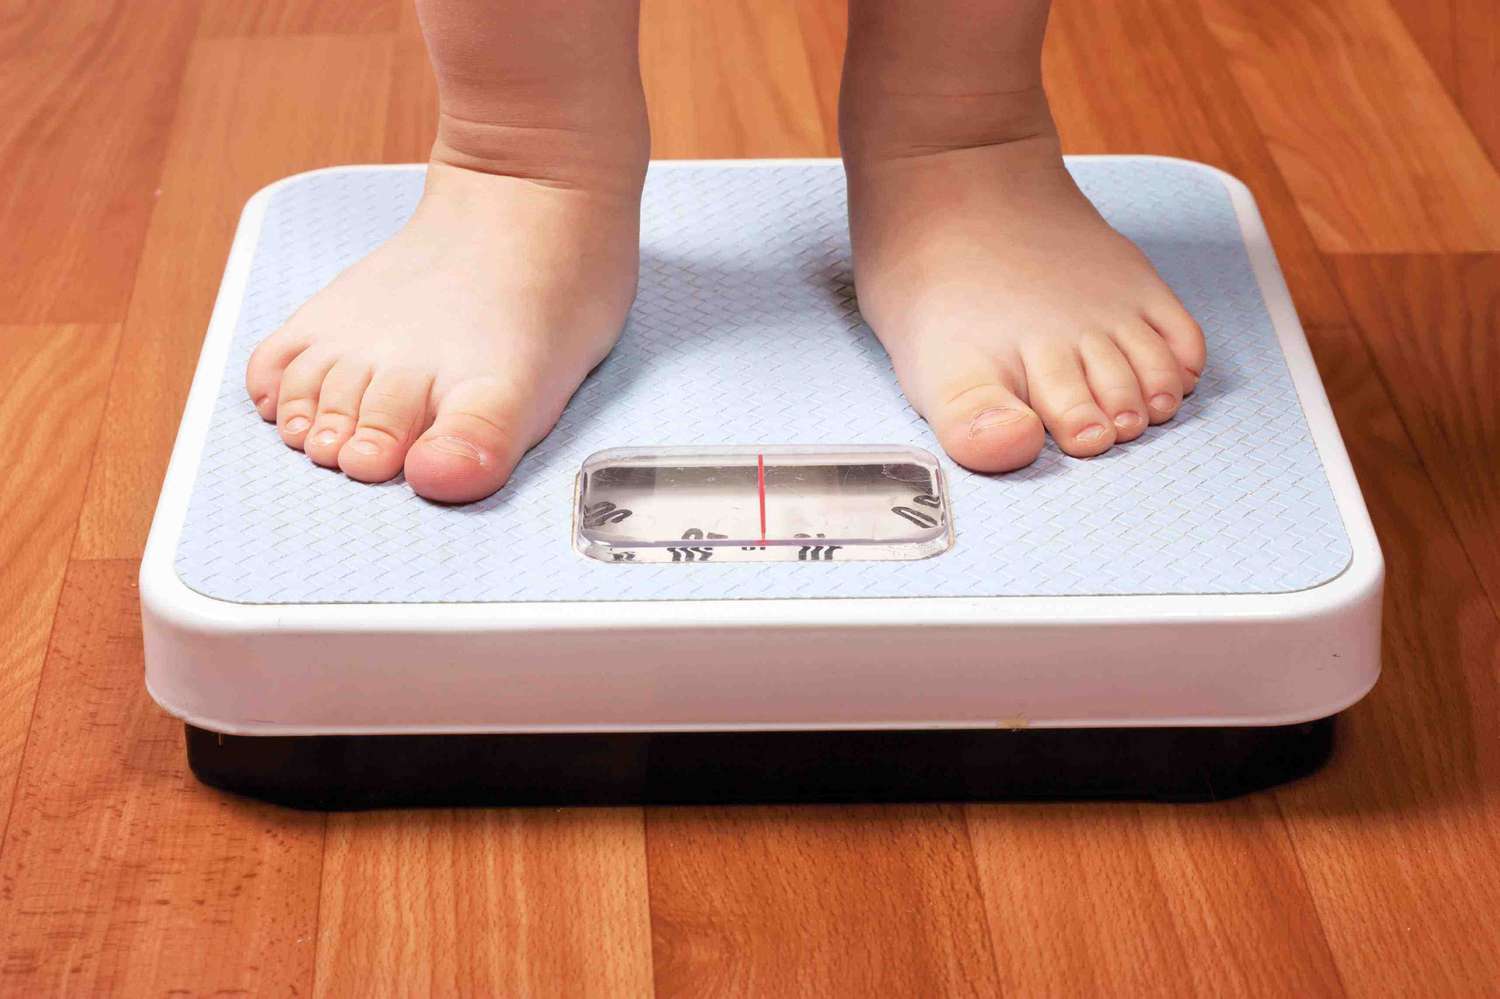 Obesidad infantil: ¿Cómo combatir la enfermedad que afecta a más del 10% de los niños menores de 5 años?